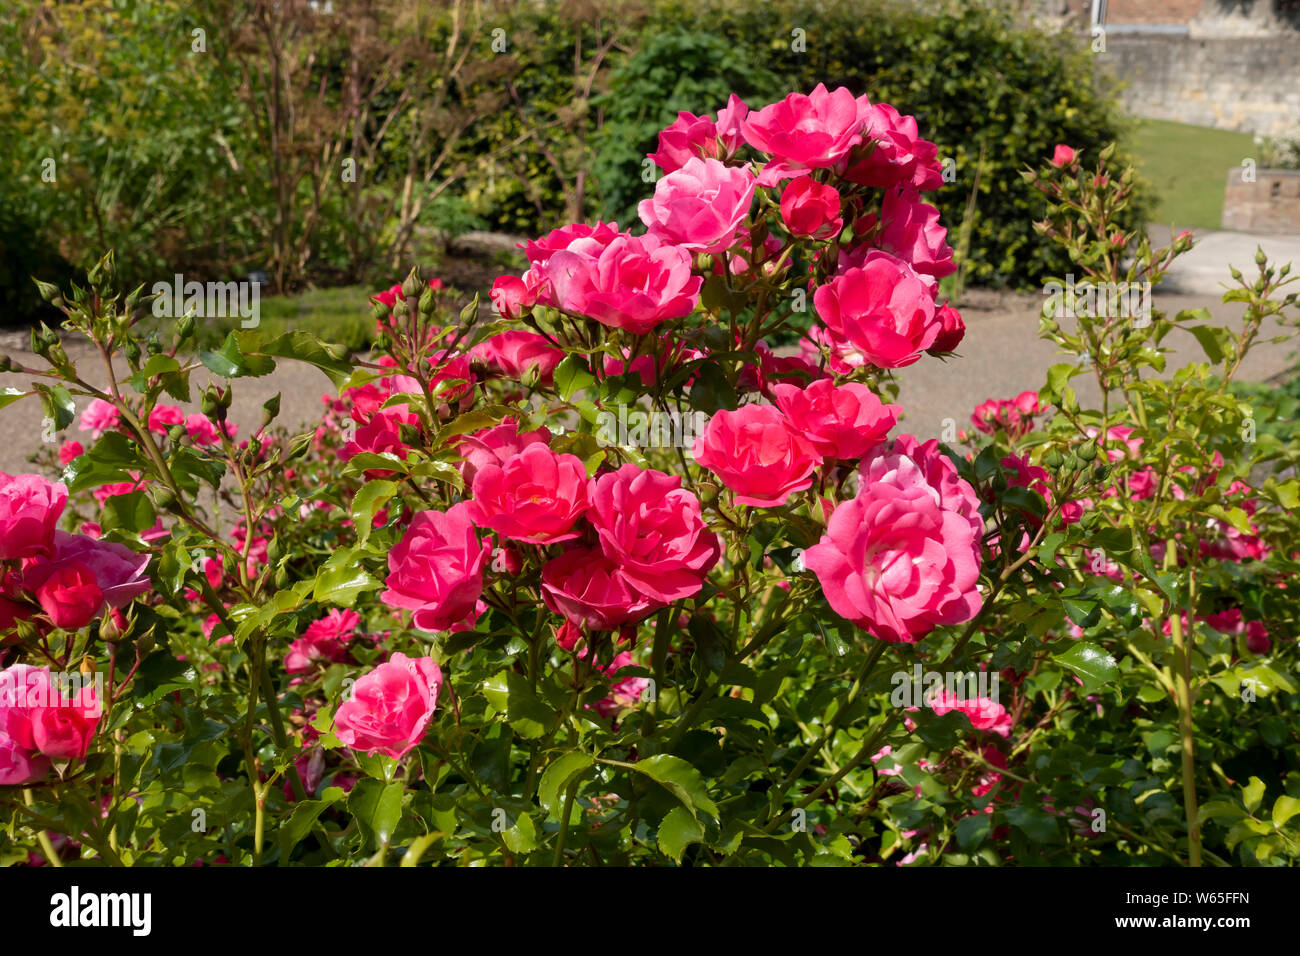 Roses 'tapis de fleur rose' fleurs rose rose se ferment dans le jardin d'été Angleterre Royaume-Uni GB Grande-Bretagne Banque D'Images